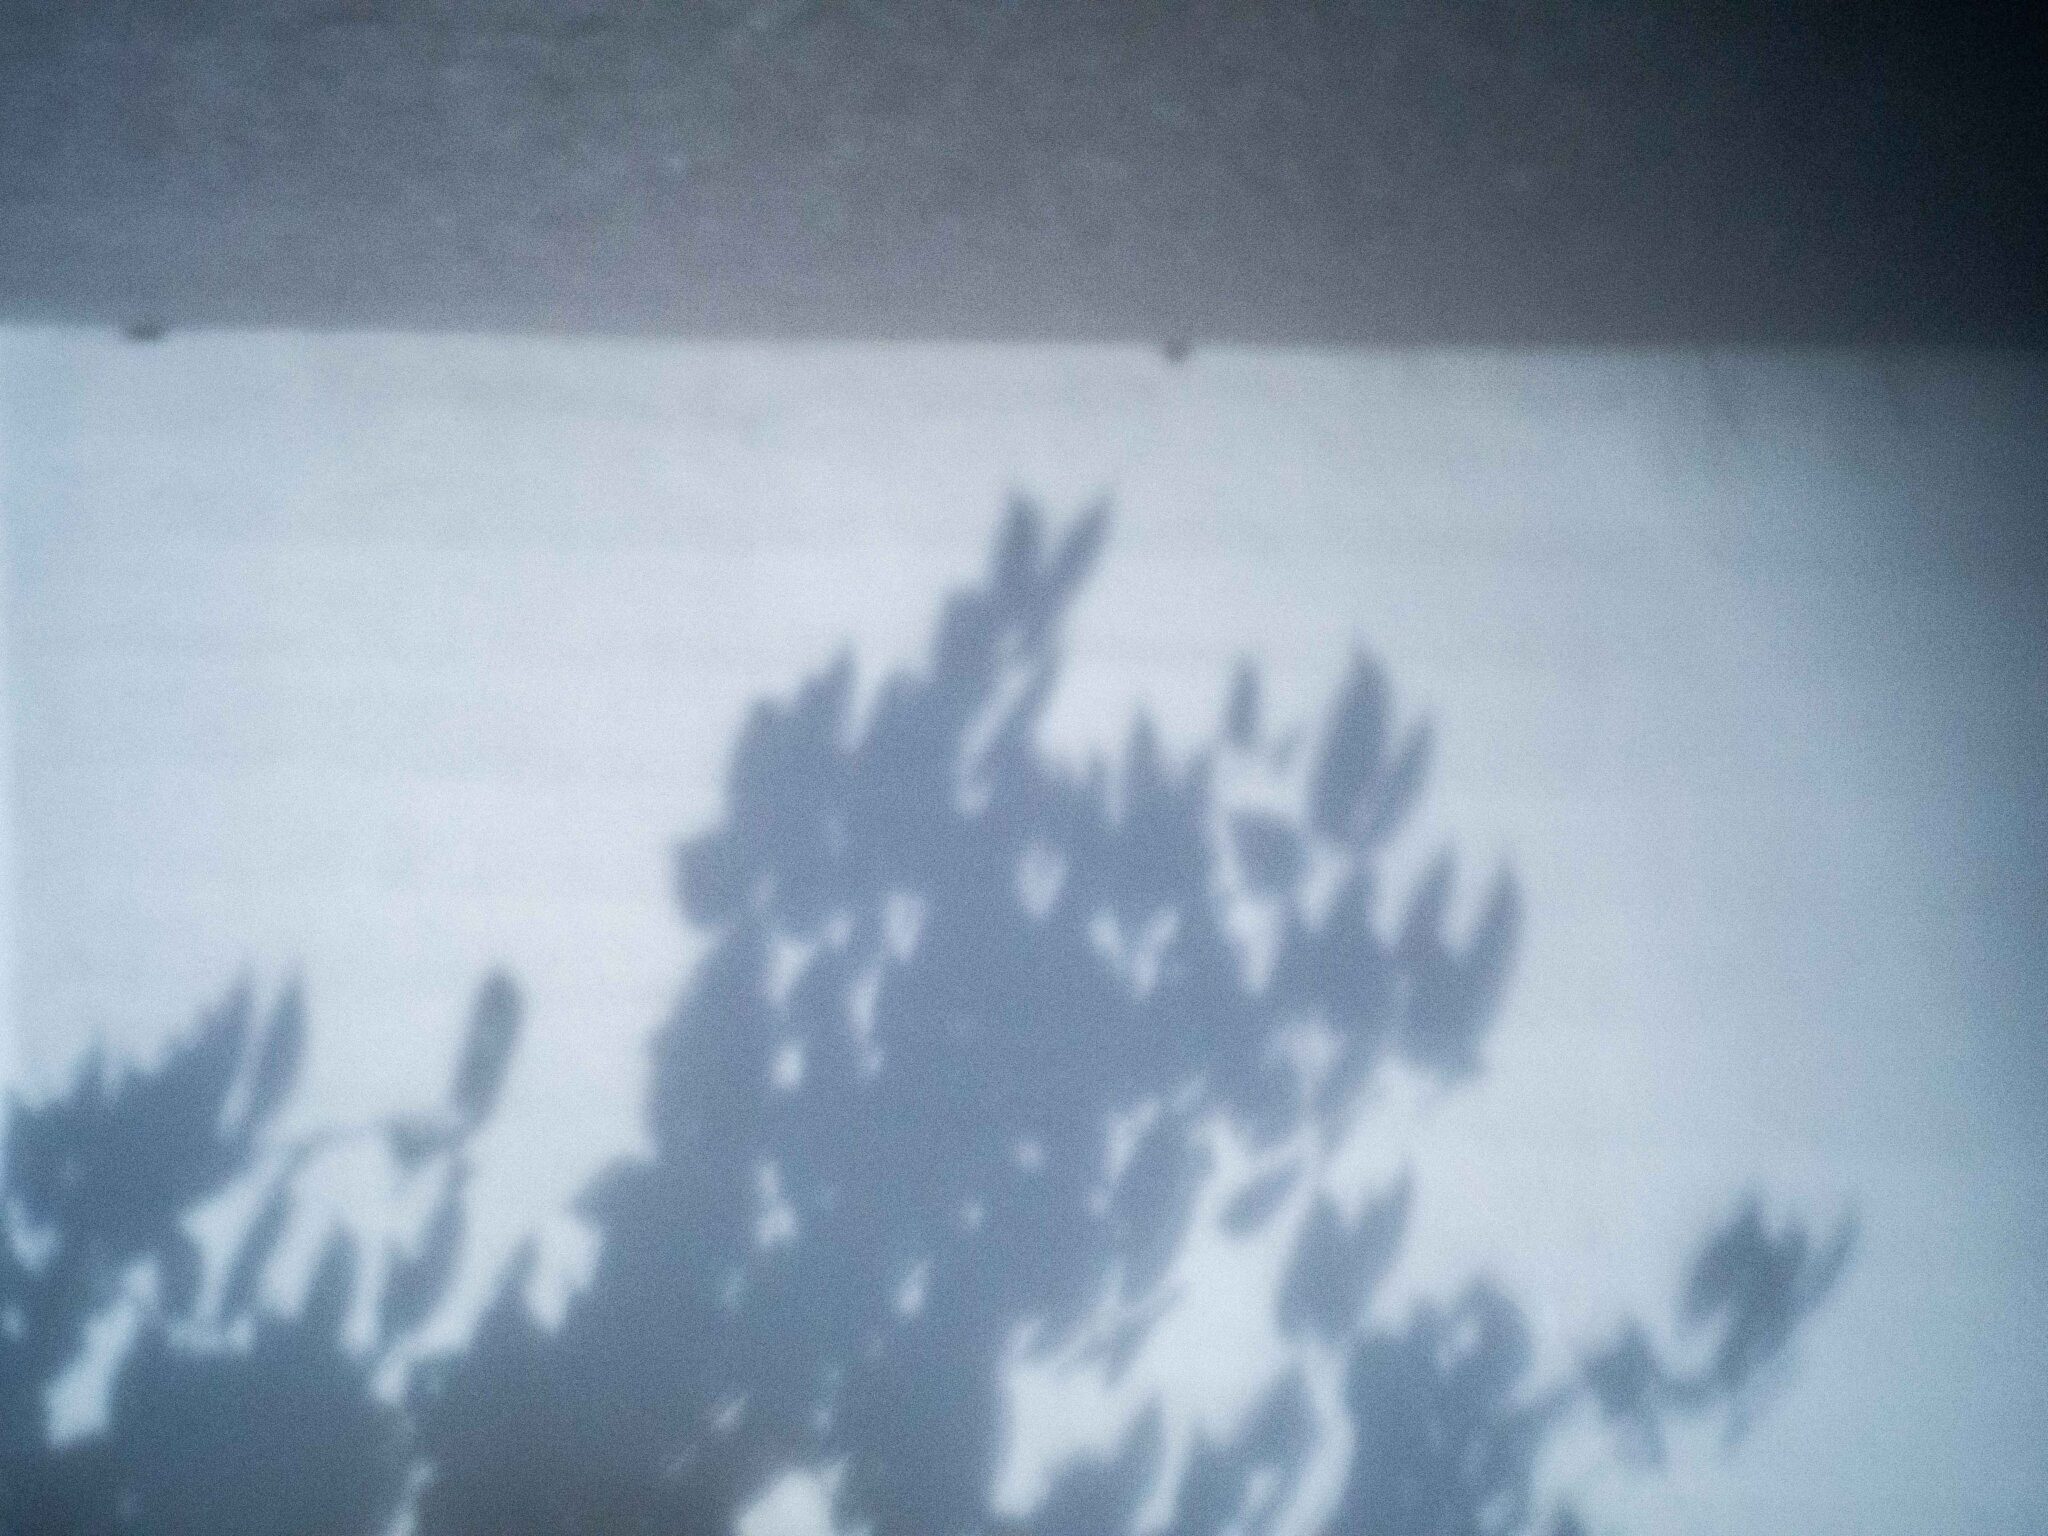 ピンホールで撮った葉の影